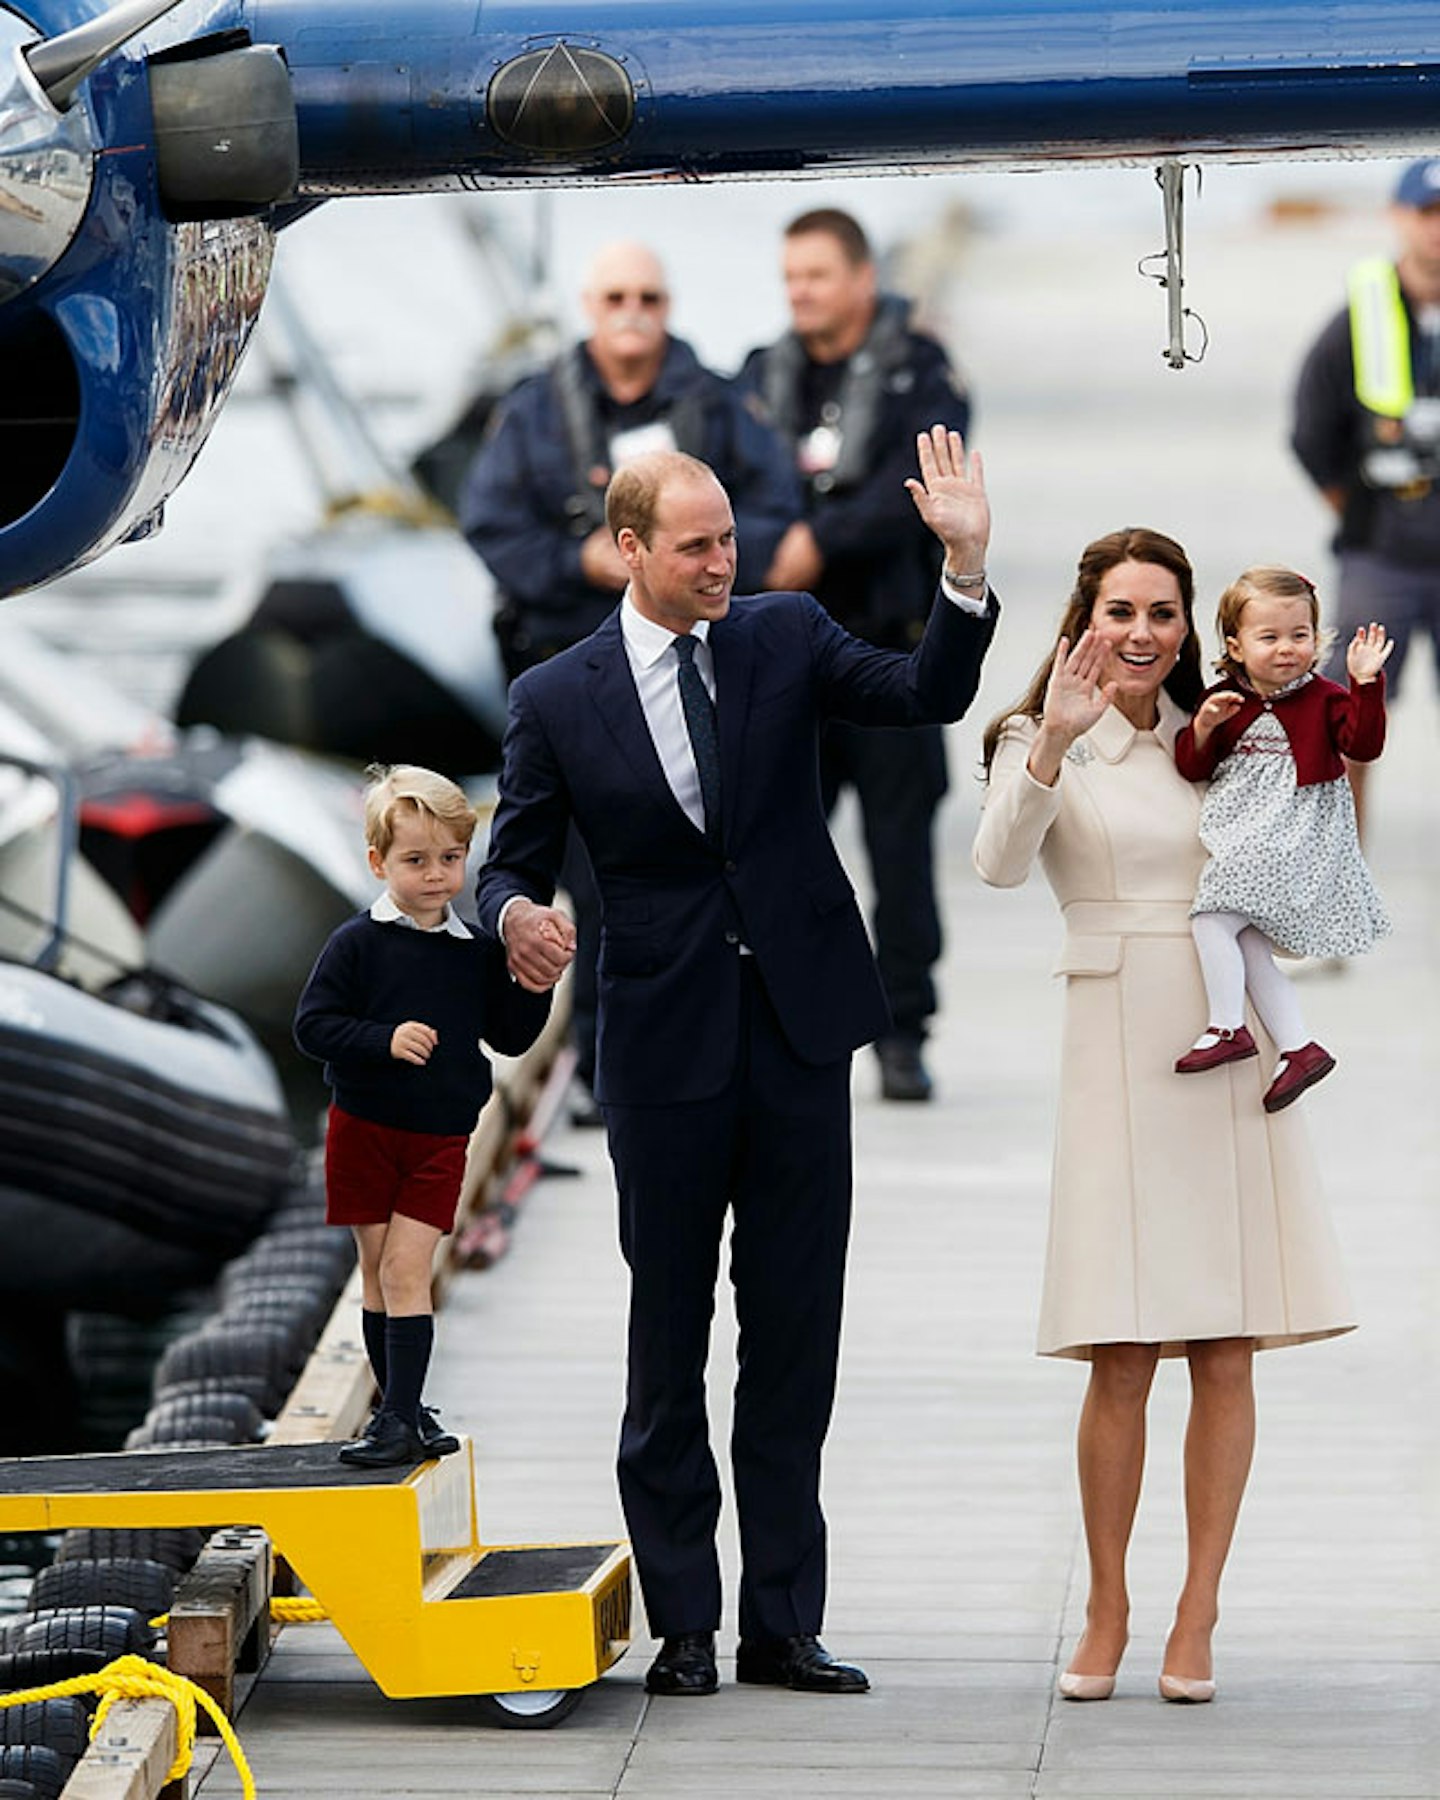 royal family waves goodbye